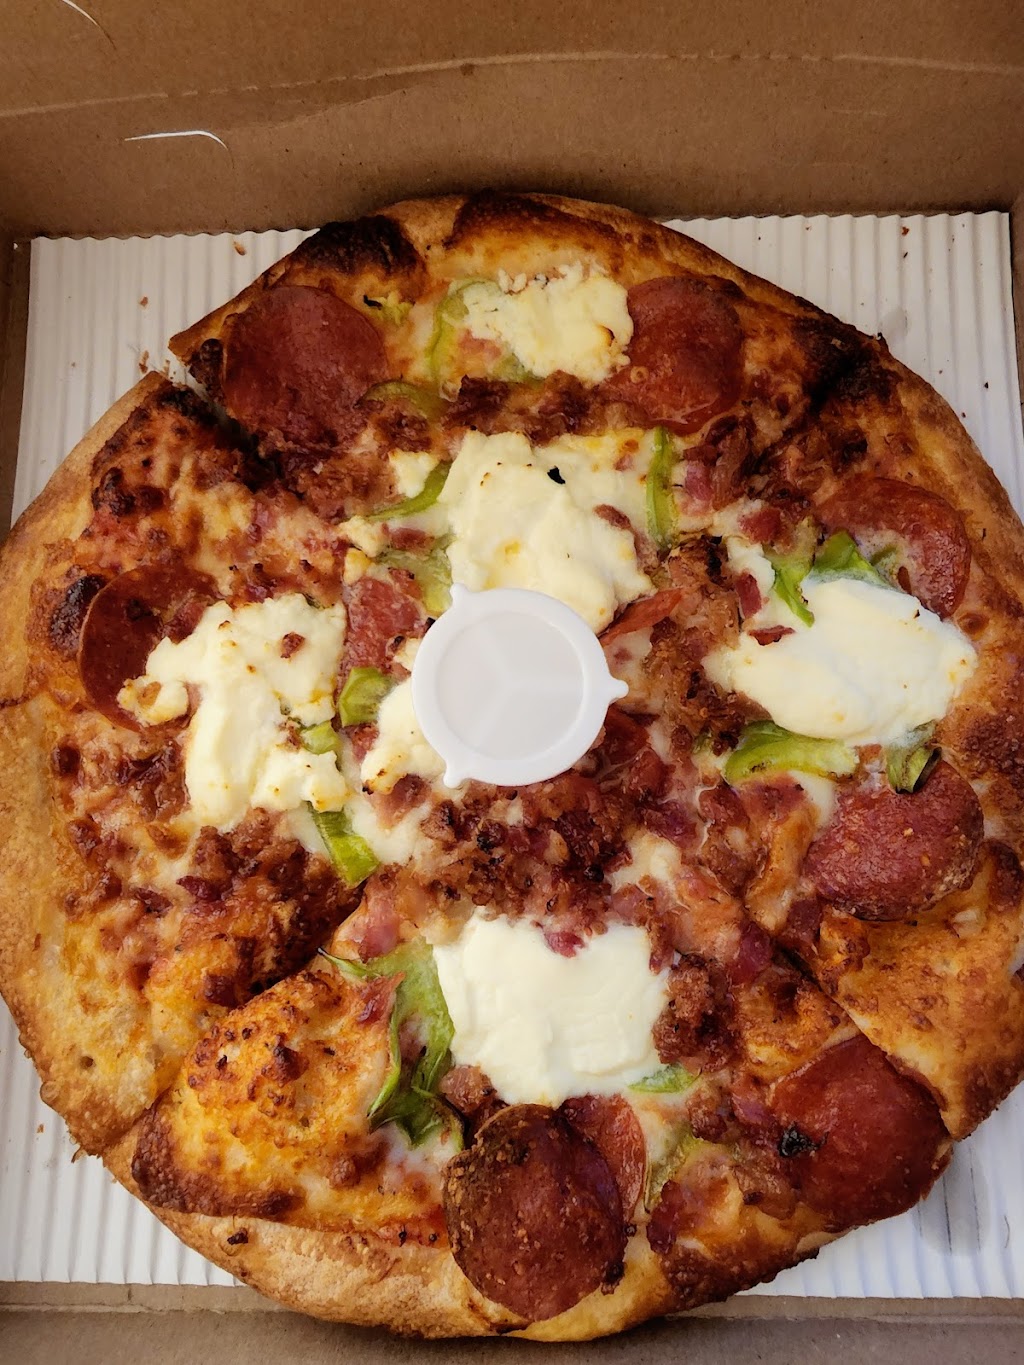 Ameci Pizza Kitchen | 240 N Glenoaks Blvd, Burbank, CA 91502, USA | Phone: (818) 846-5200